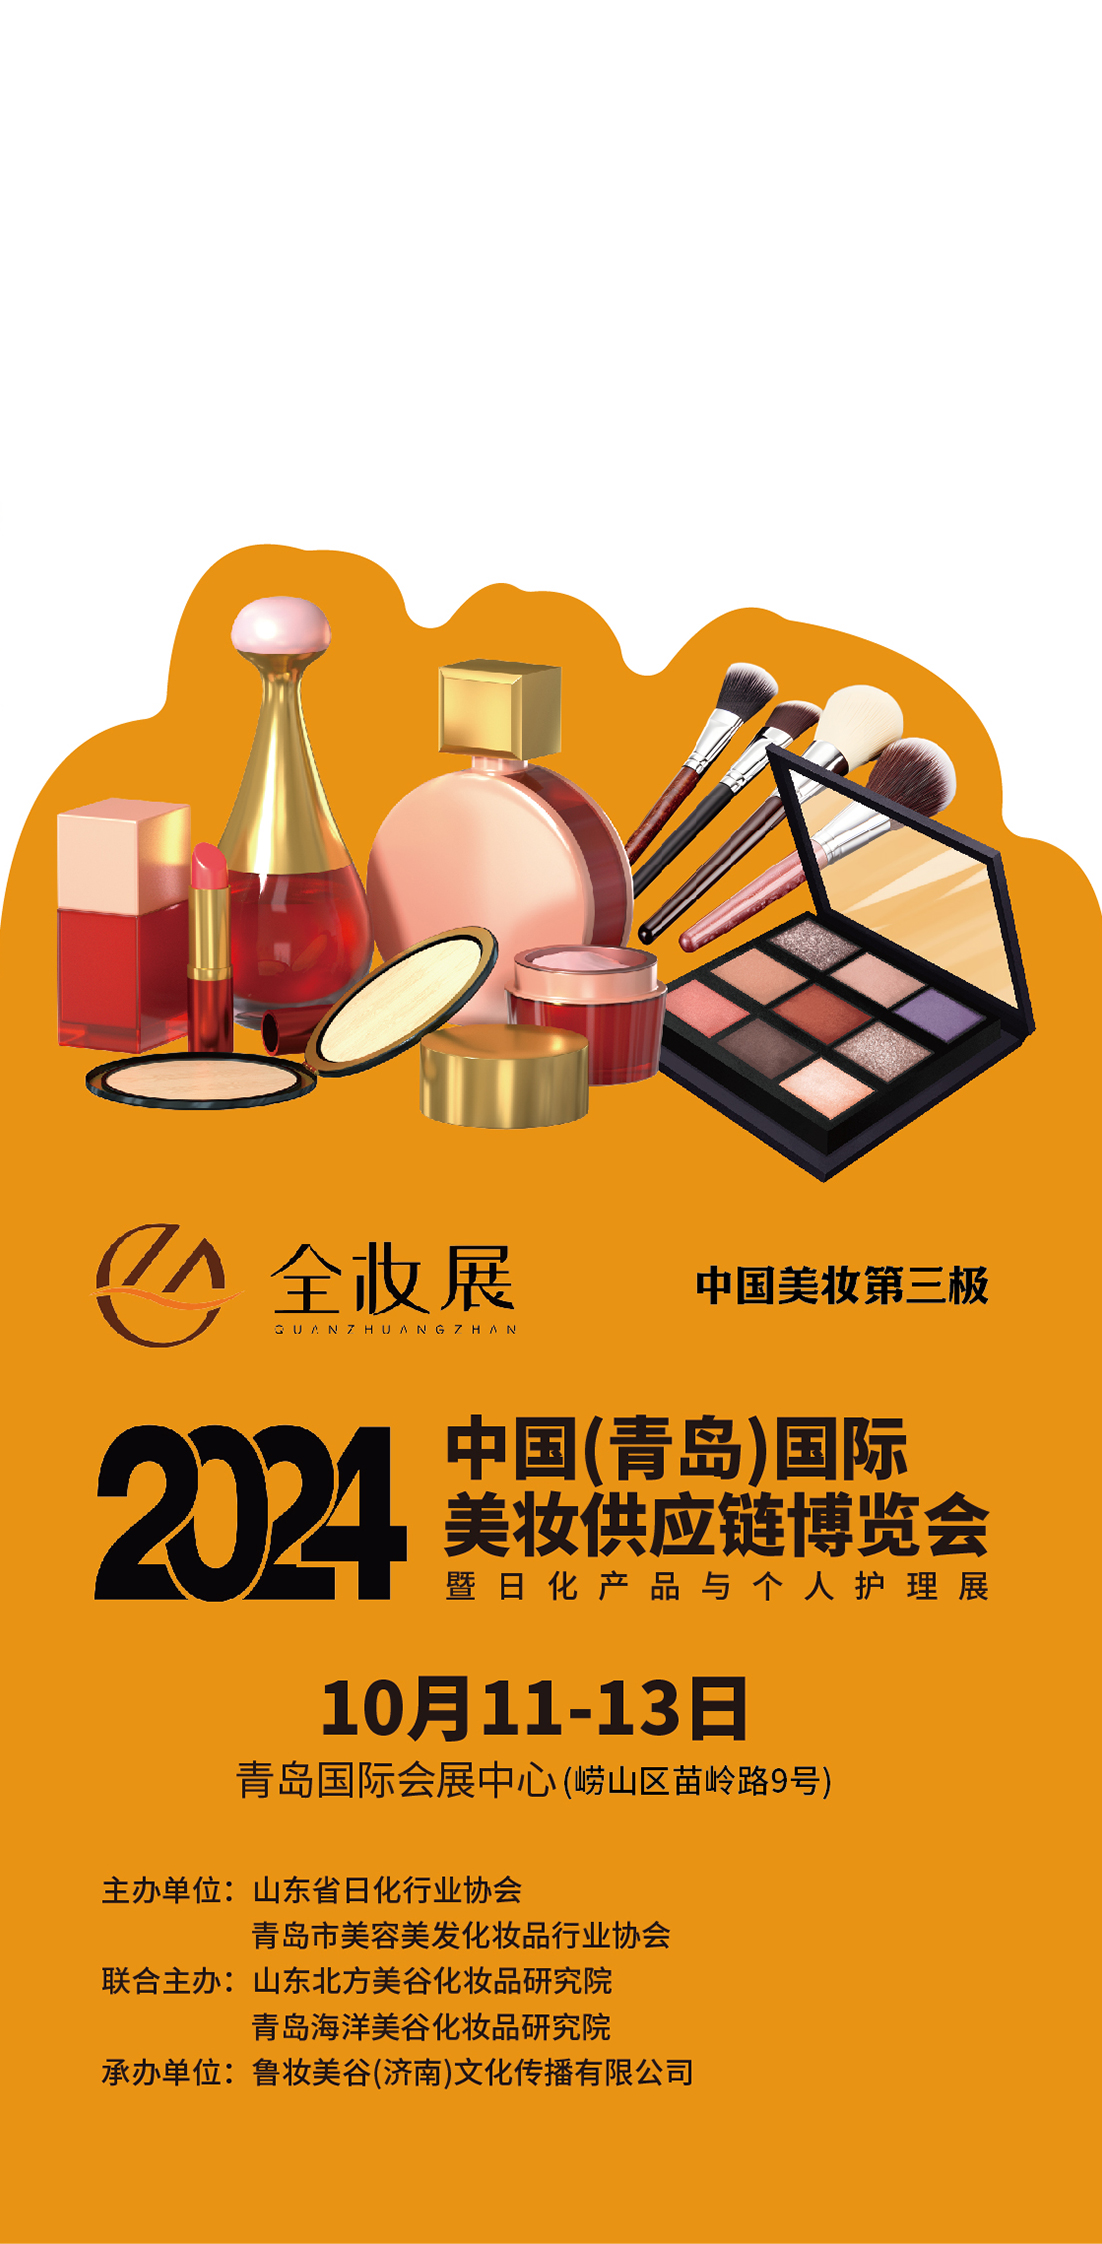 行业重磅消息丨全妆展助力中国美妆第三极鲁妆振兴新突破